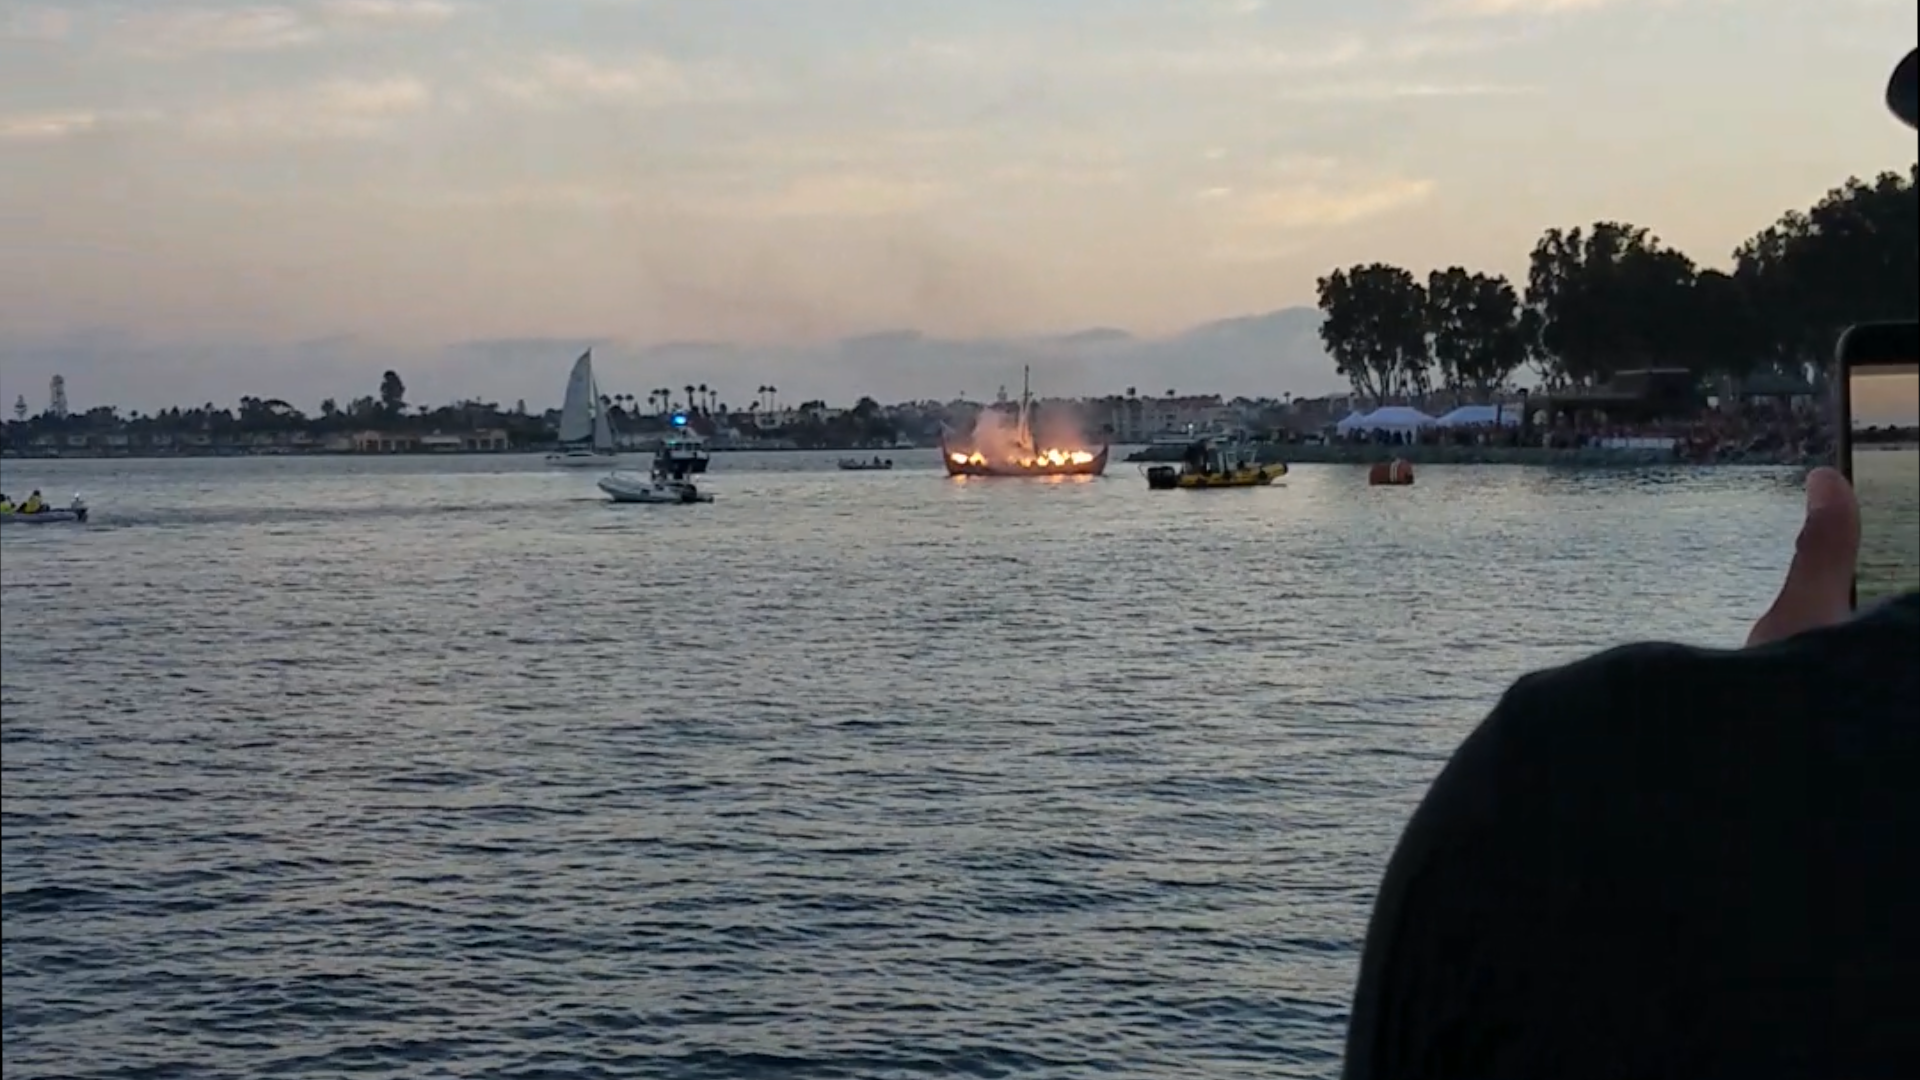 Comic-Con 2017 - Boat on Fire 1